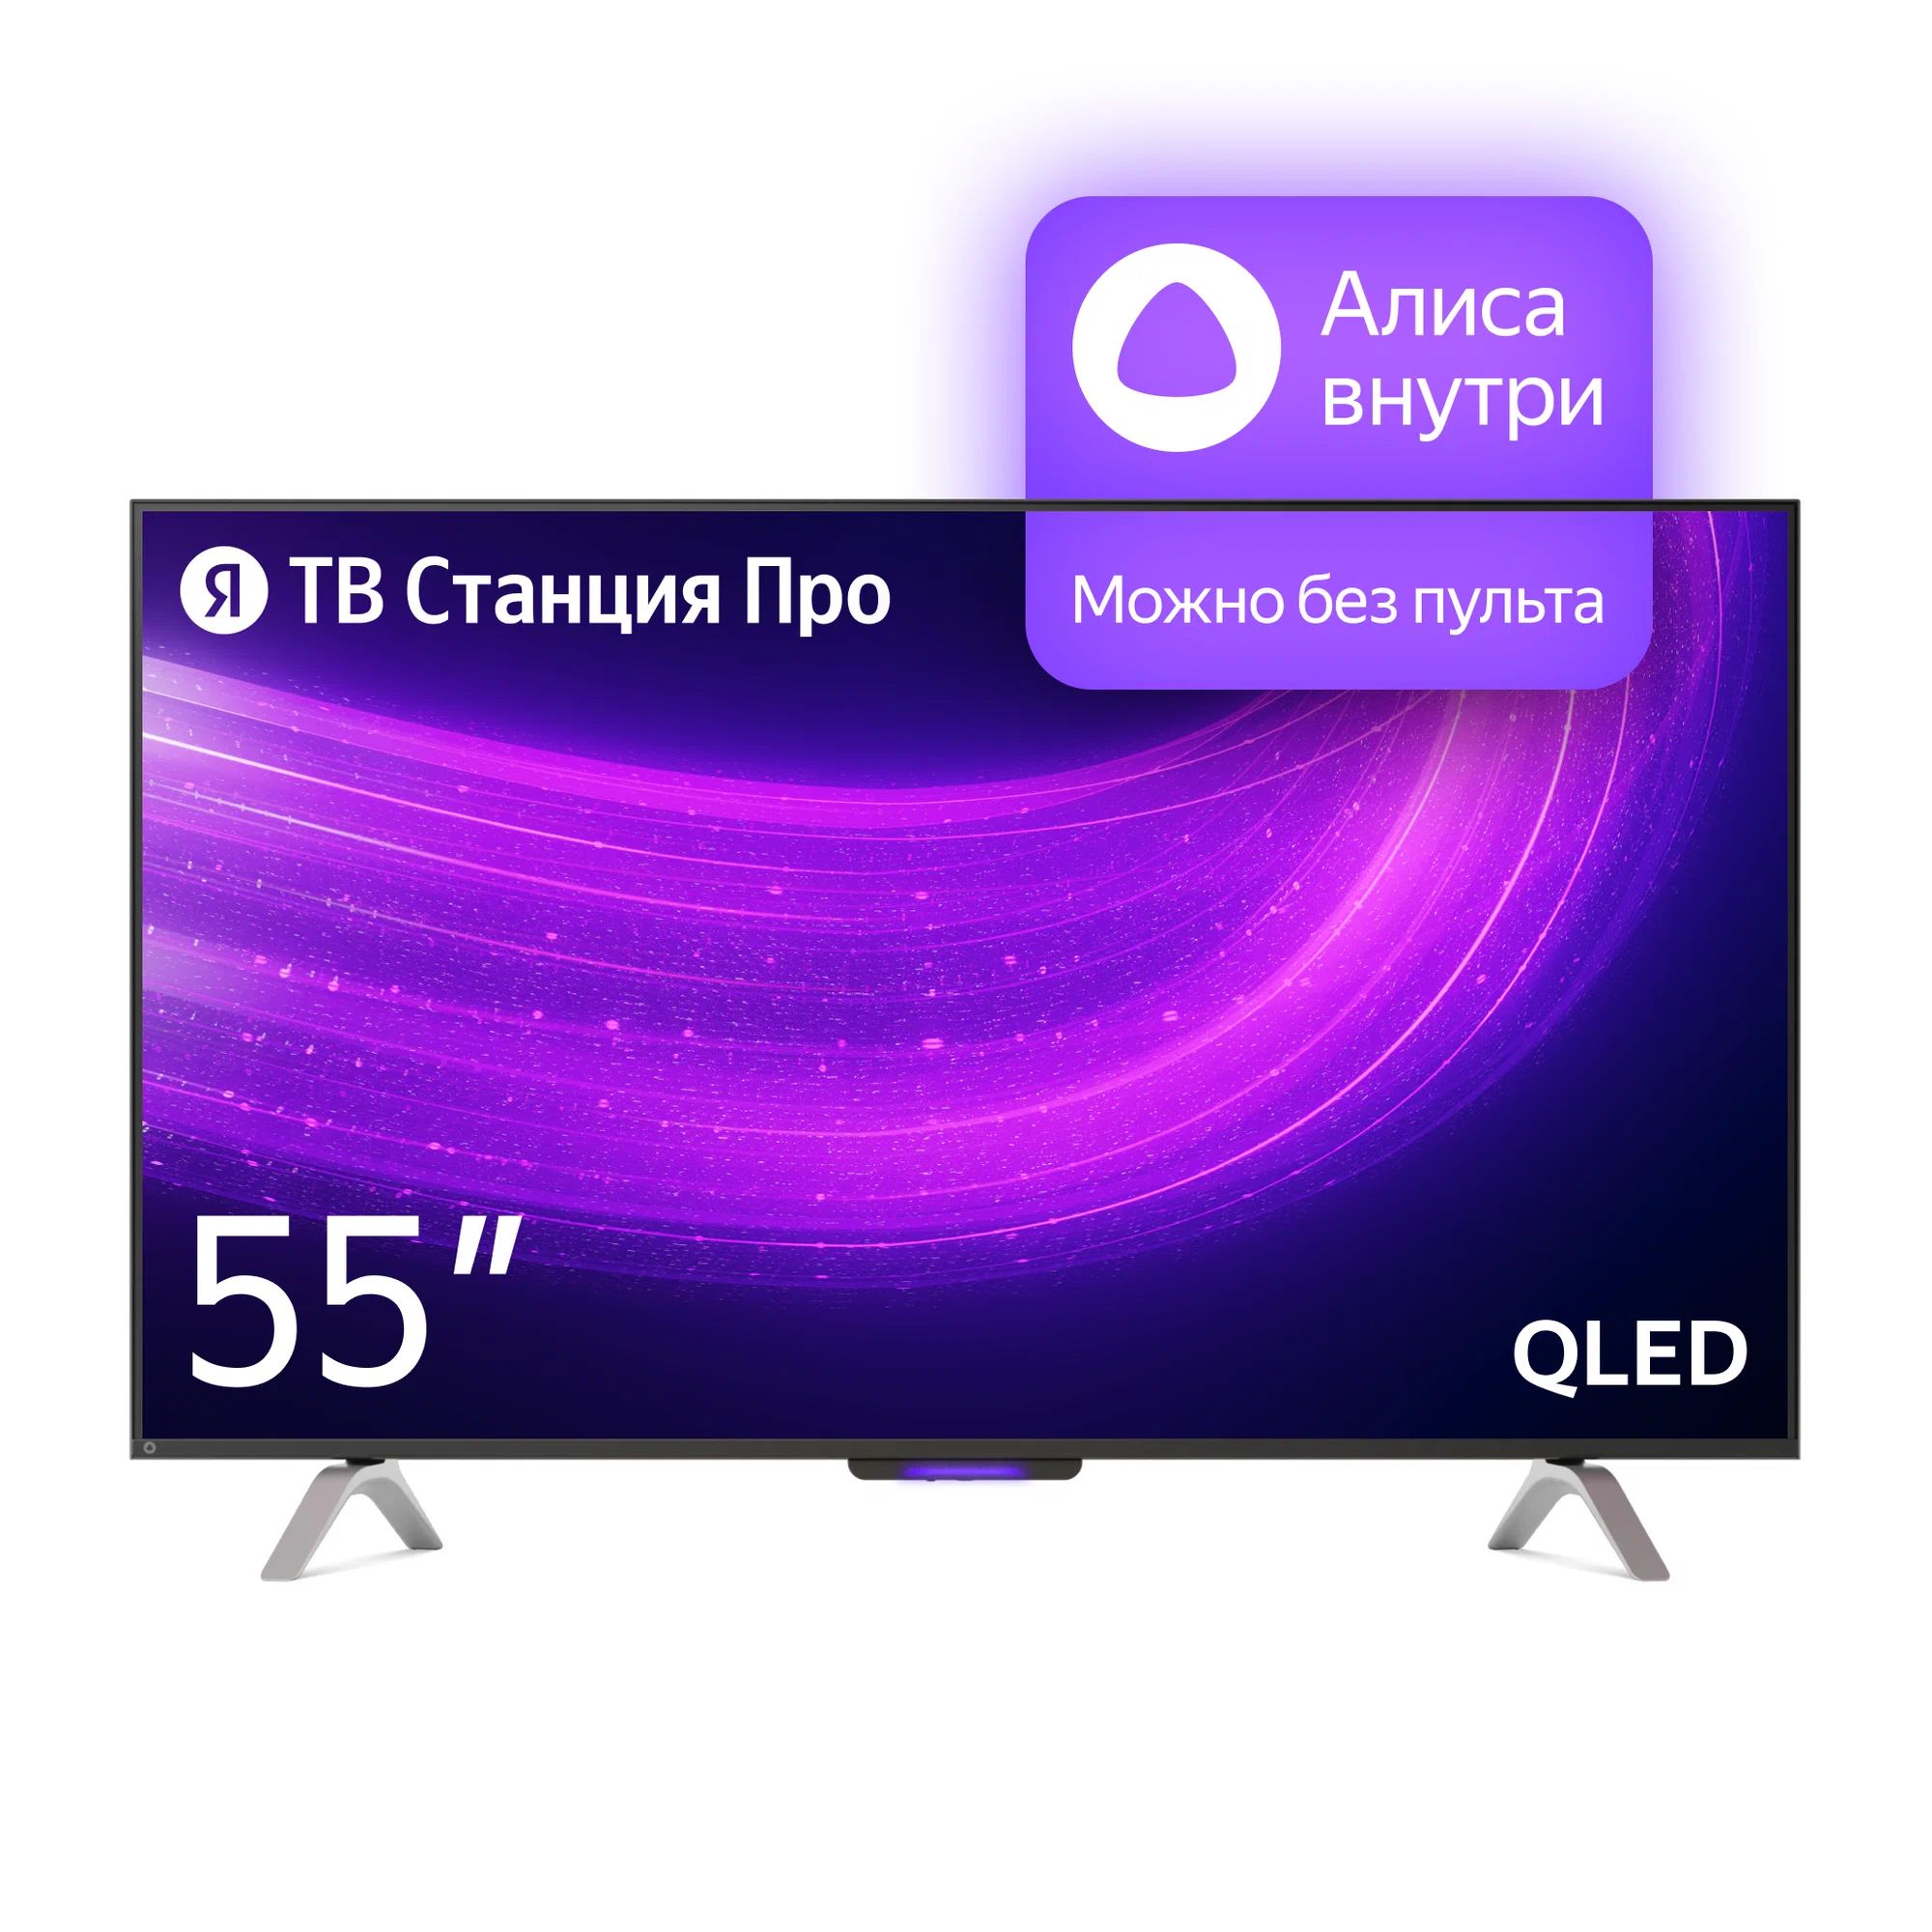 Телевизор Яндекс YNDX-00101 PRO Тв станция с Алисой 55 цена и фото